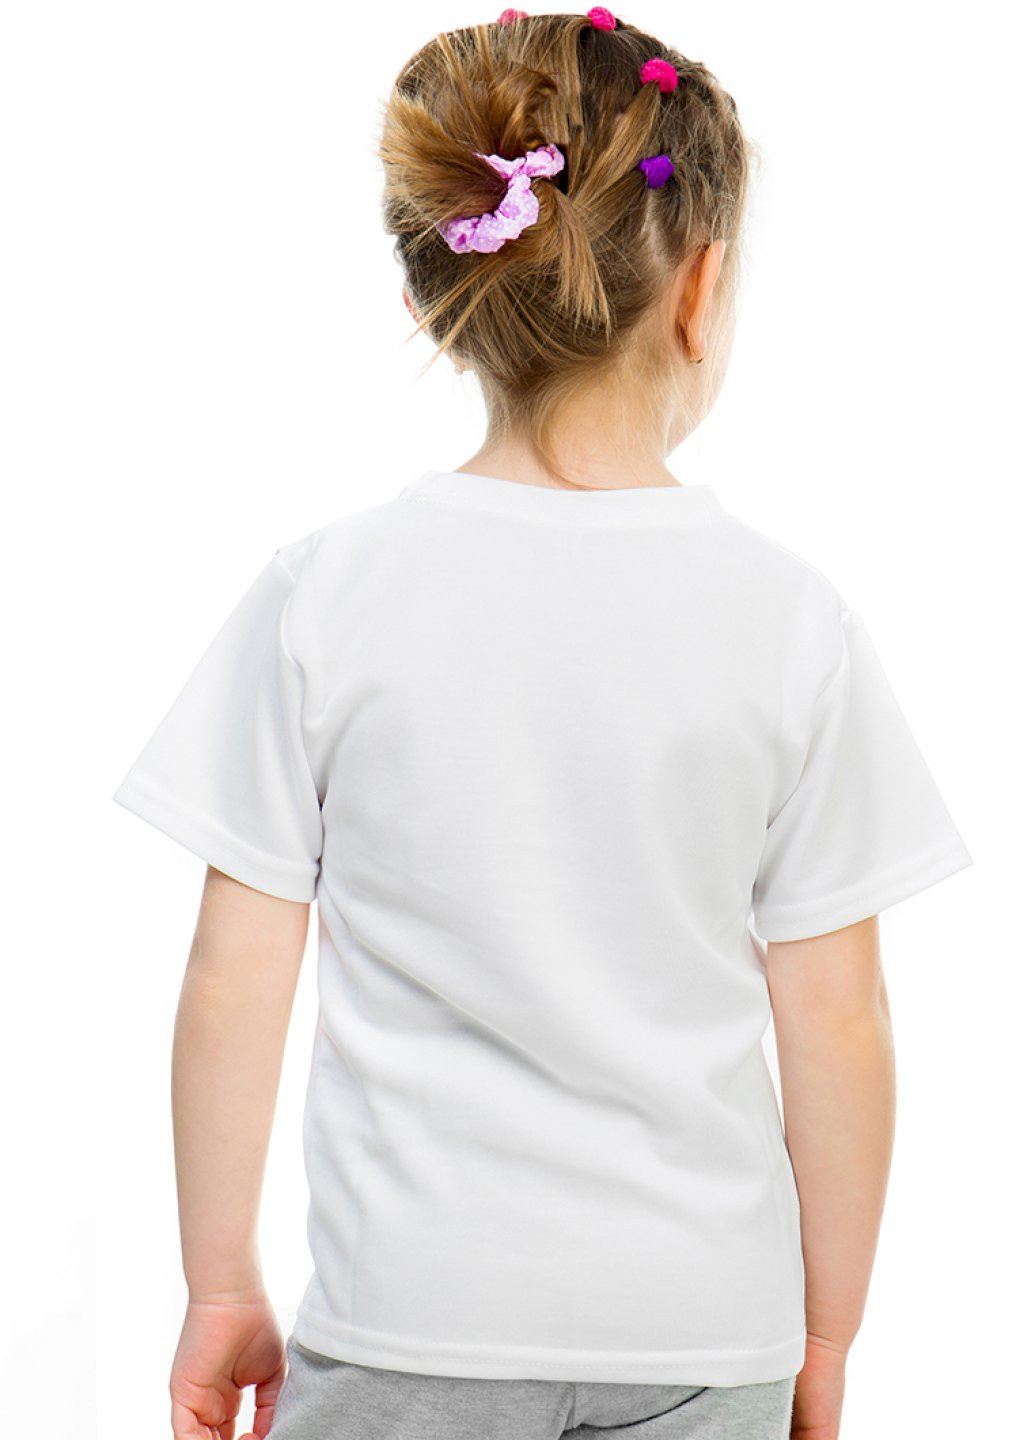 Белая демисезонная футболка детская белая "мяу" YAPPI